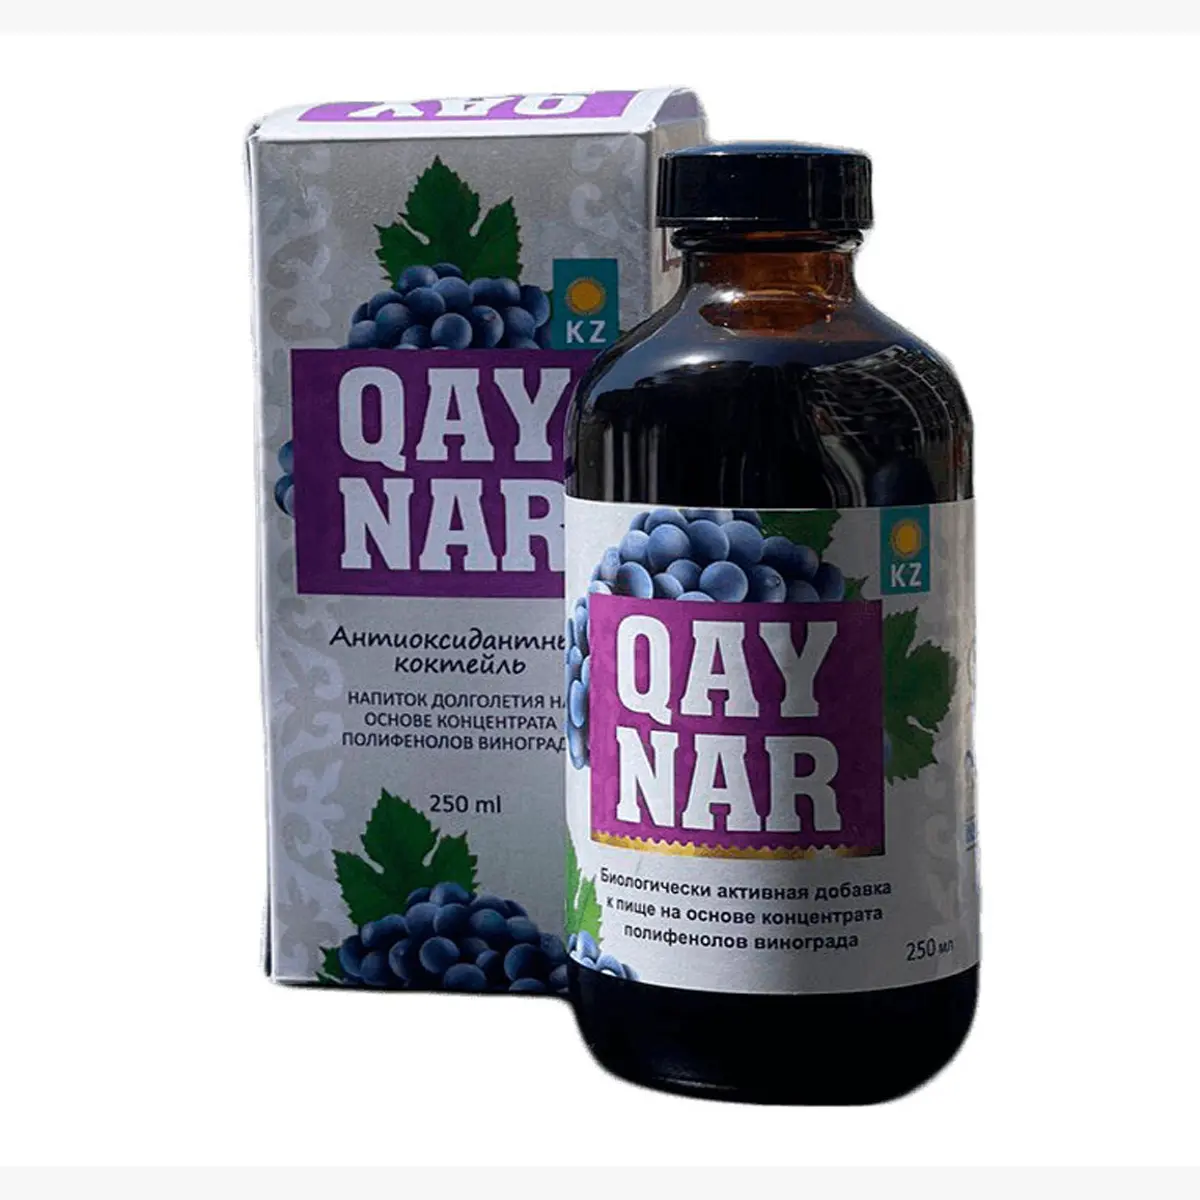 Extrato de polifenóis de sementes de uva "QAYNAR" suplemento alimentar bio-ativo contém antioxidantes naturais, produto de qualidade superior